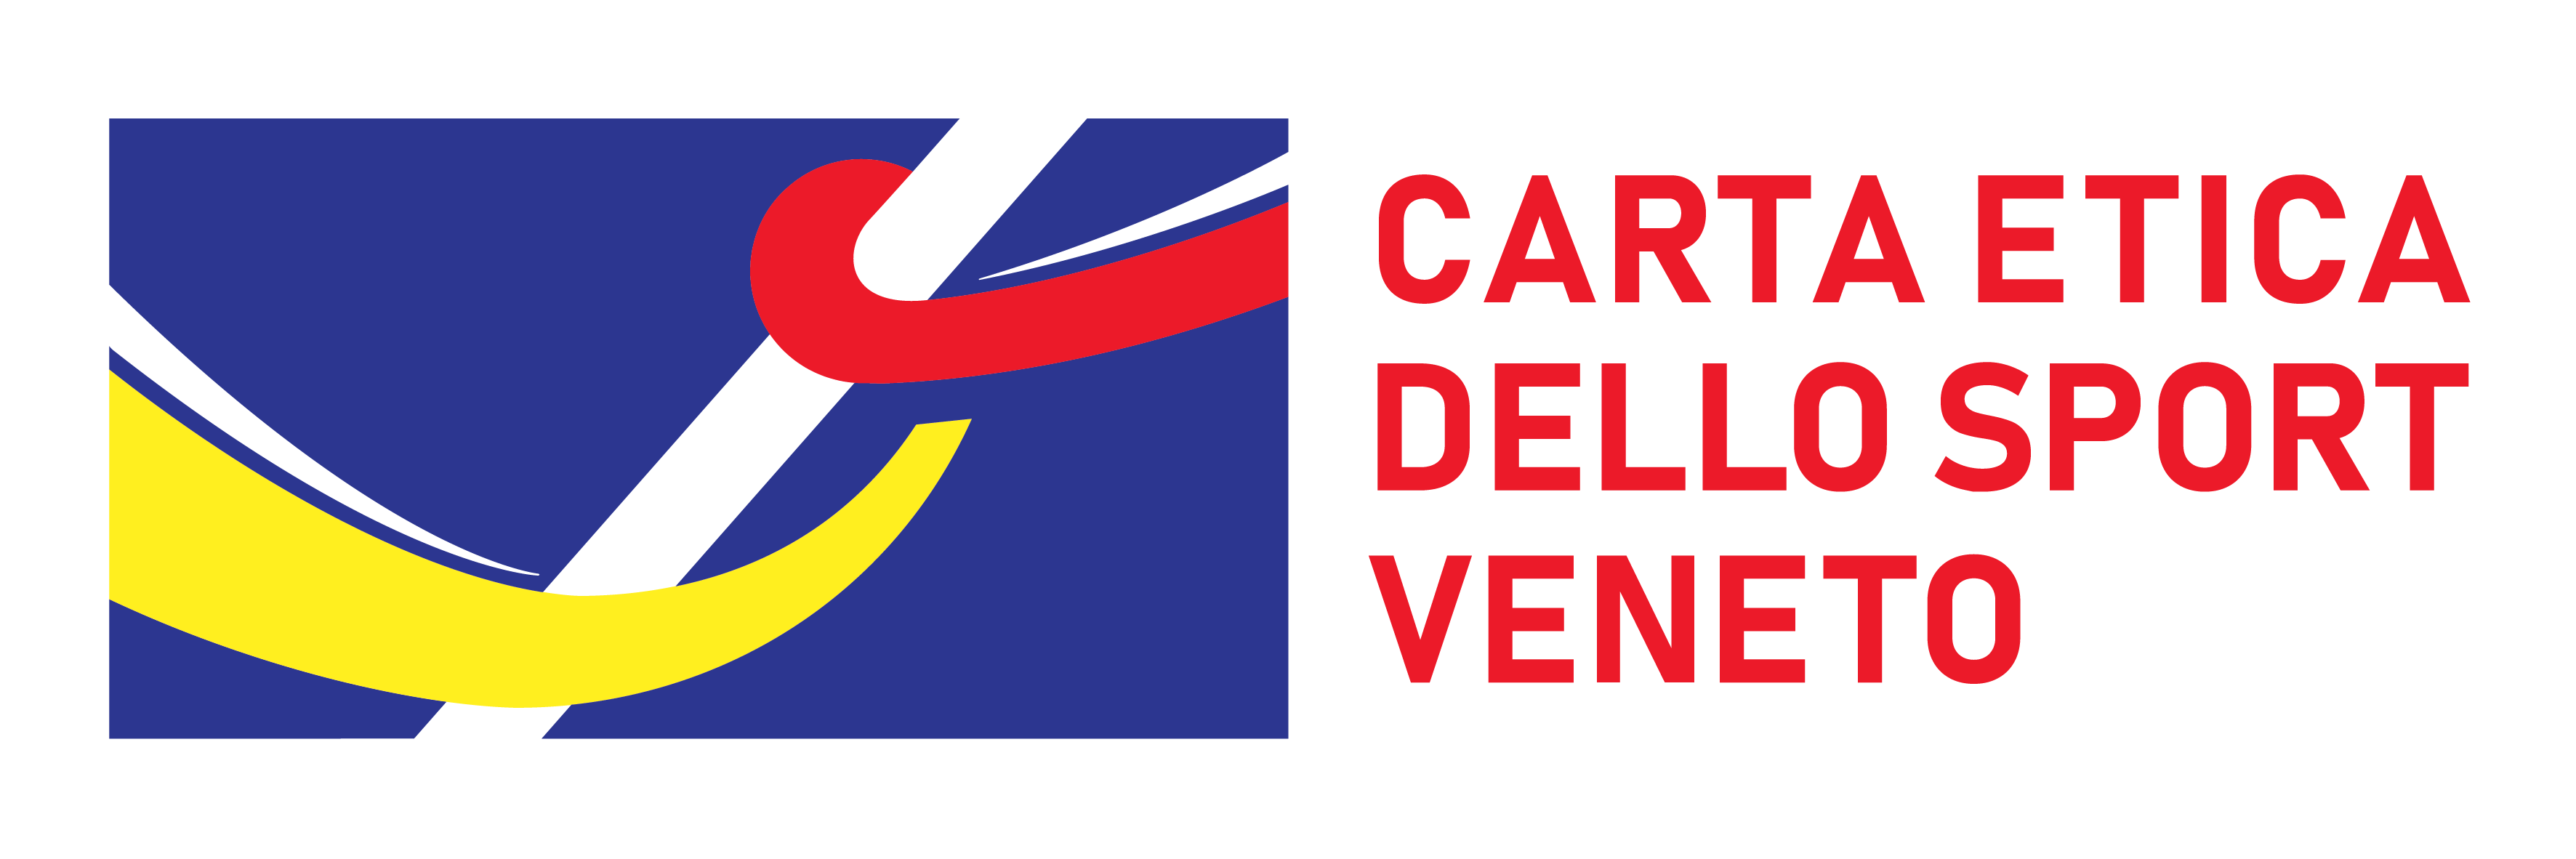 CARTA ETICA DELLO SPORT VENETO - Logo